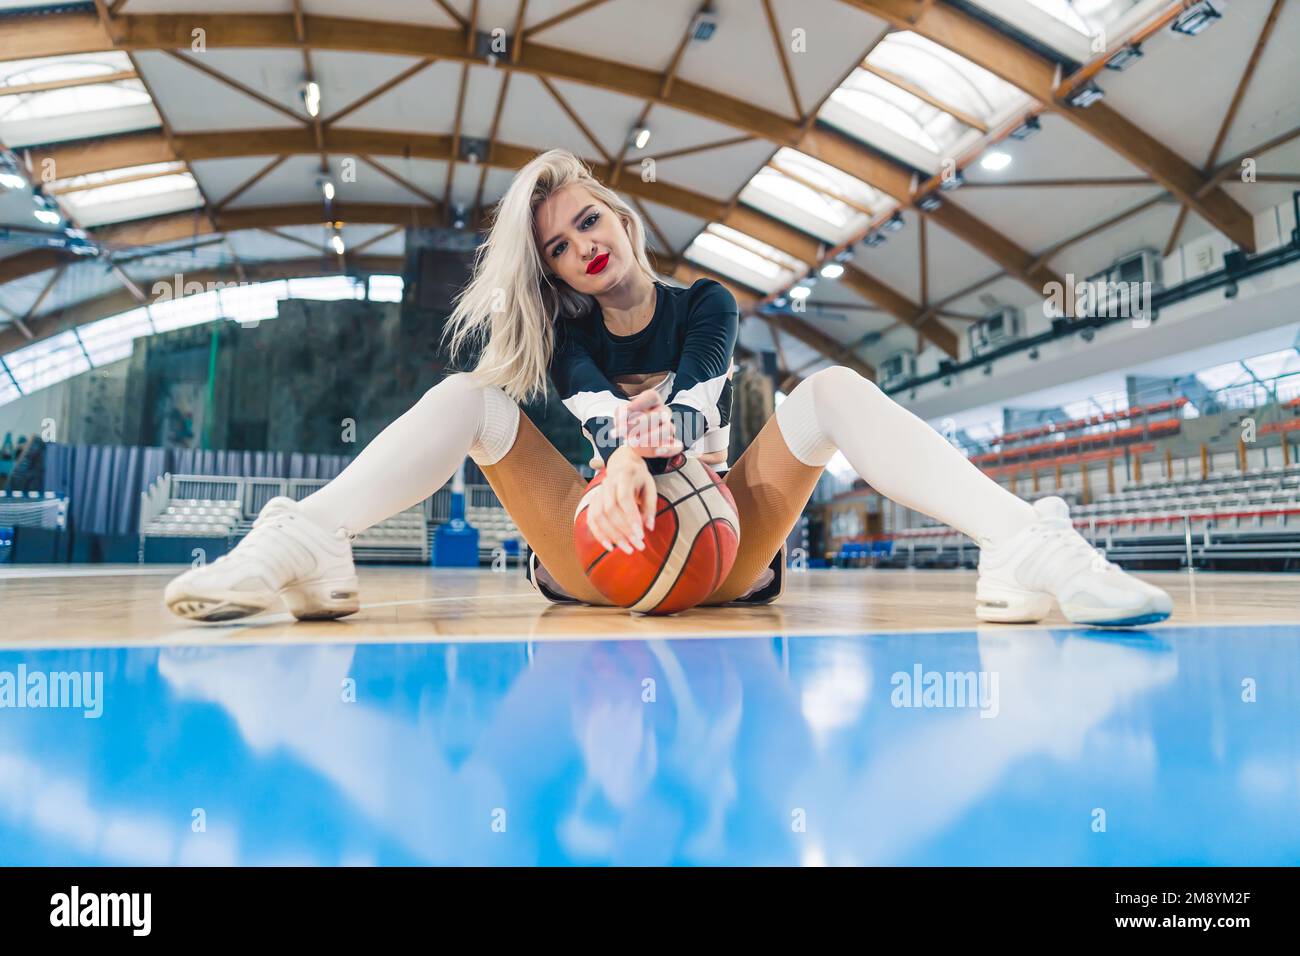 Tiro de ángulo bajo de una animadora rubia sentada en el suelo con un baloncesto entre sus piernas. Concepto deportivo. Foto de alta calidad Foto de stock